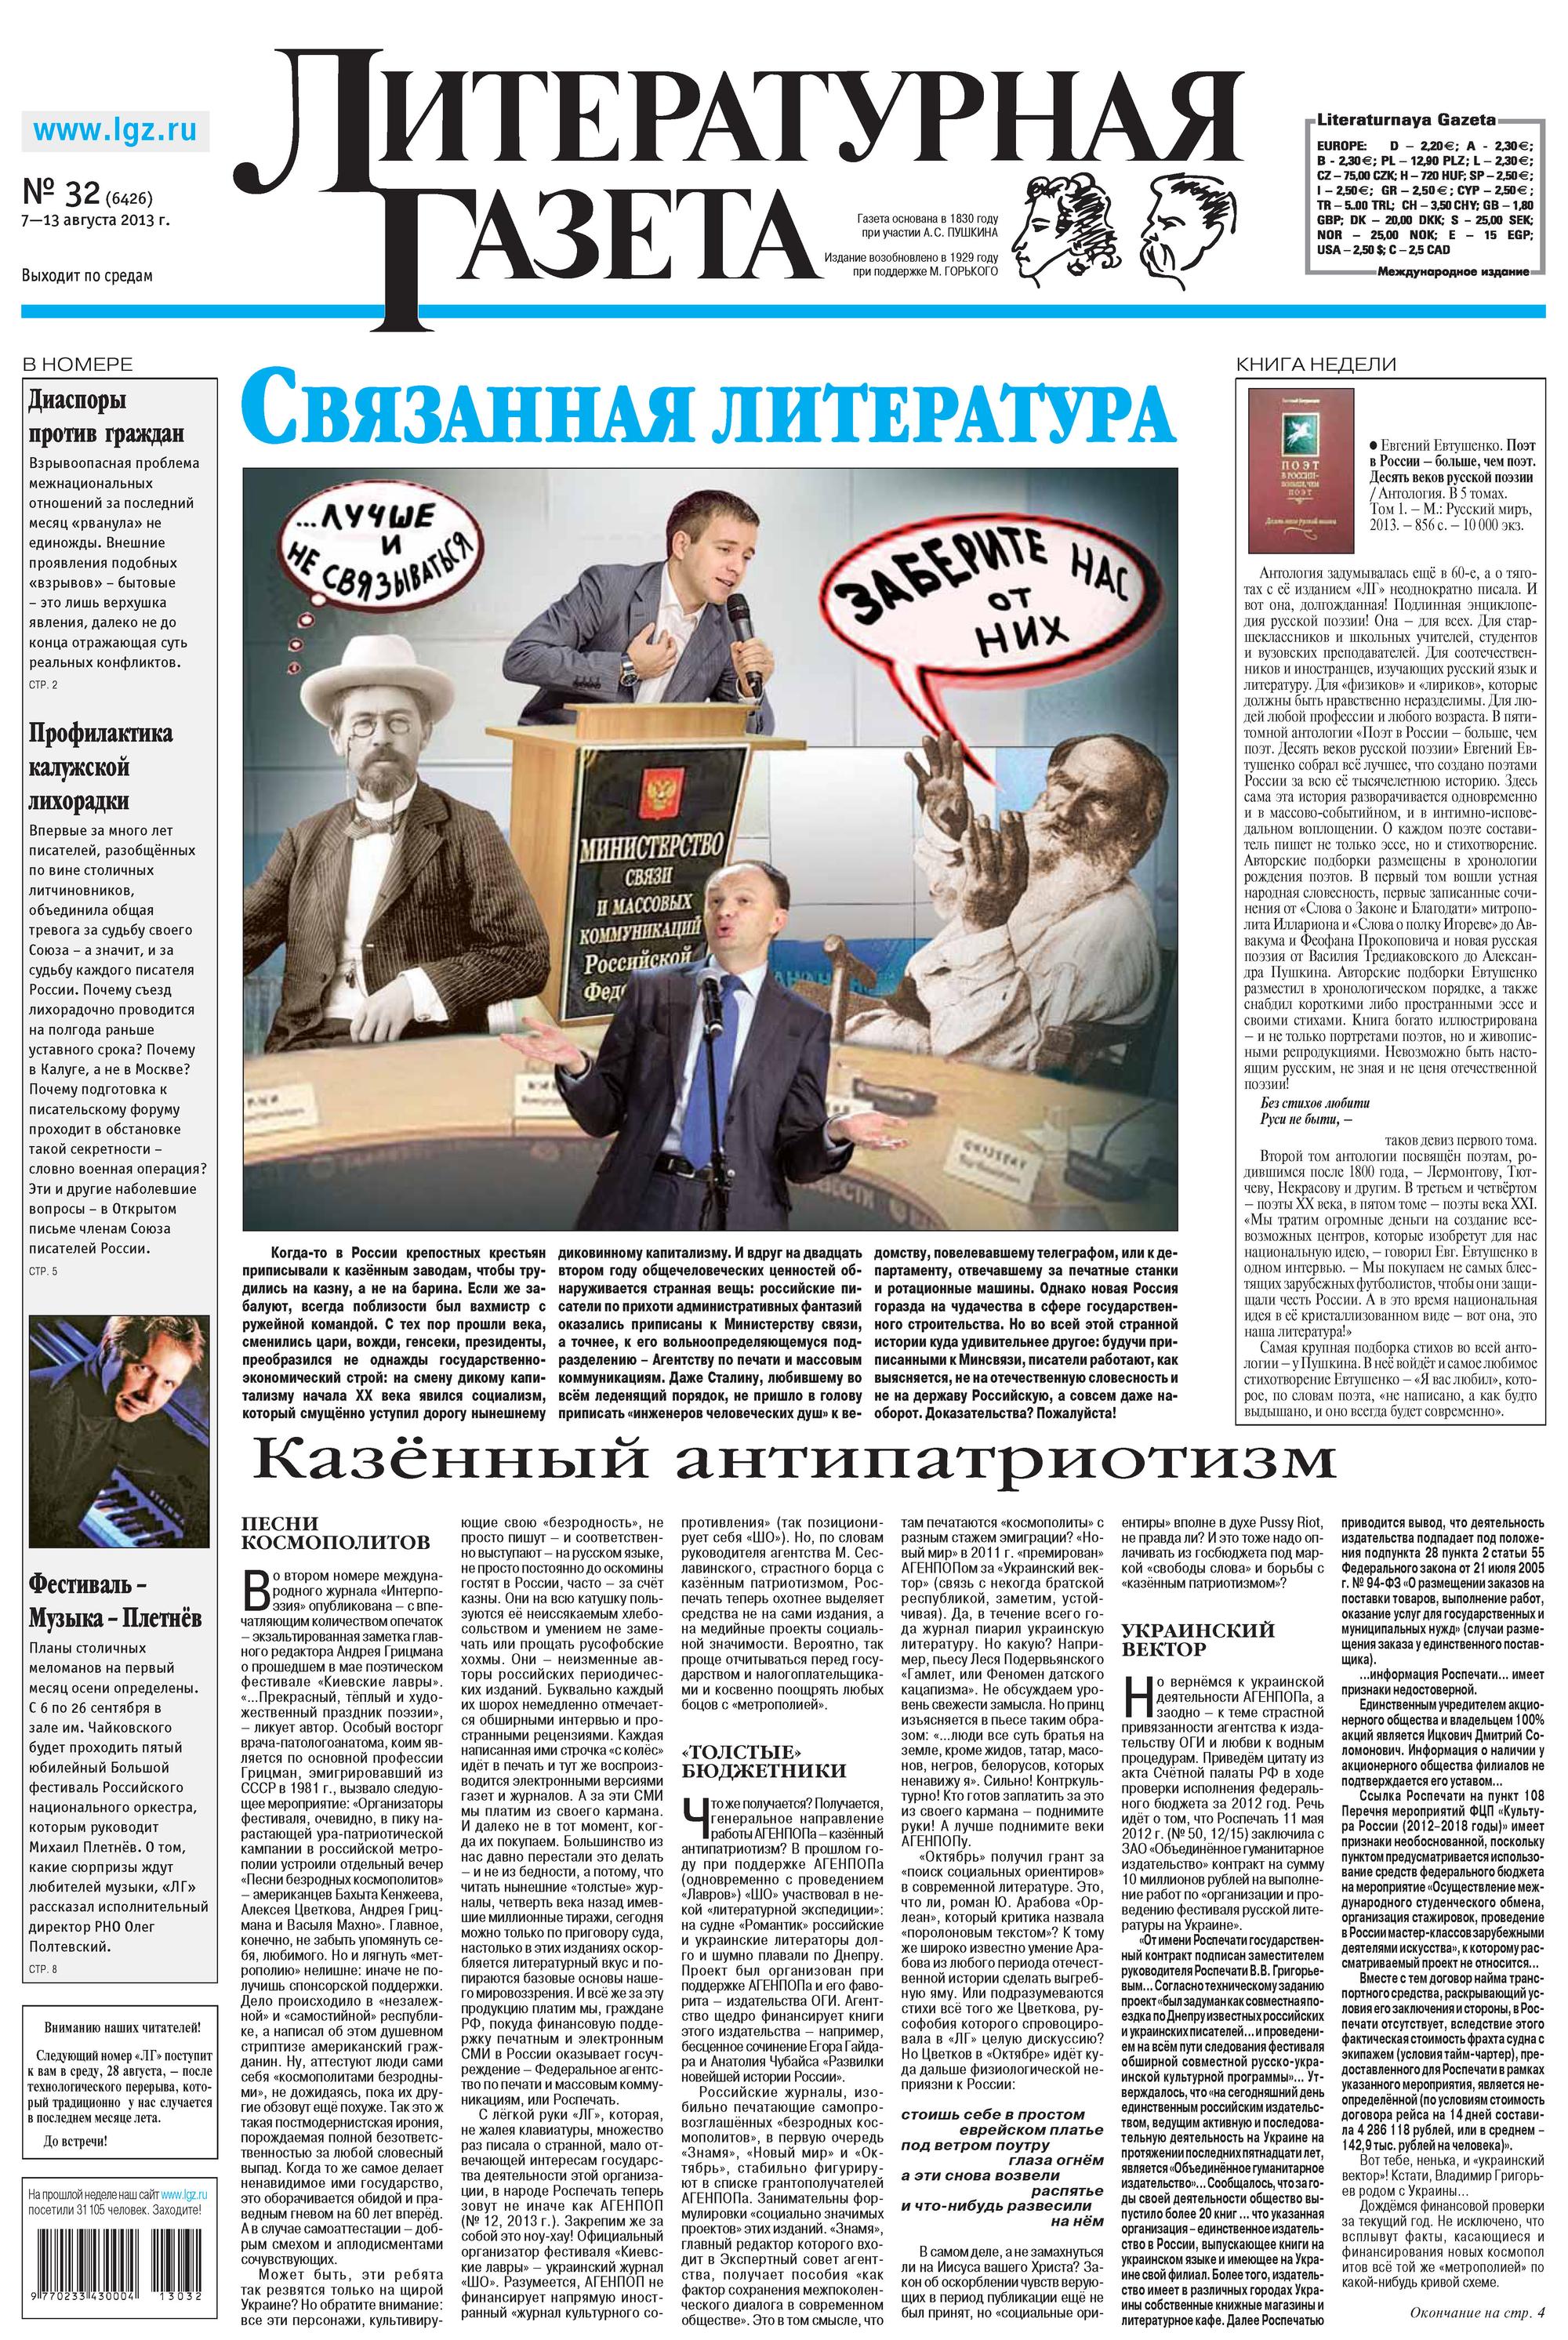 Литературная газета №32 (6426) 2013